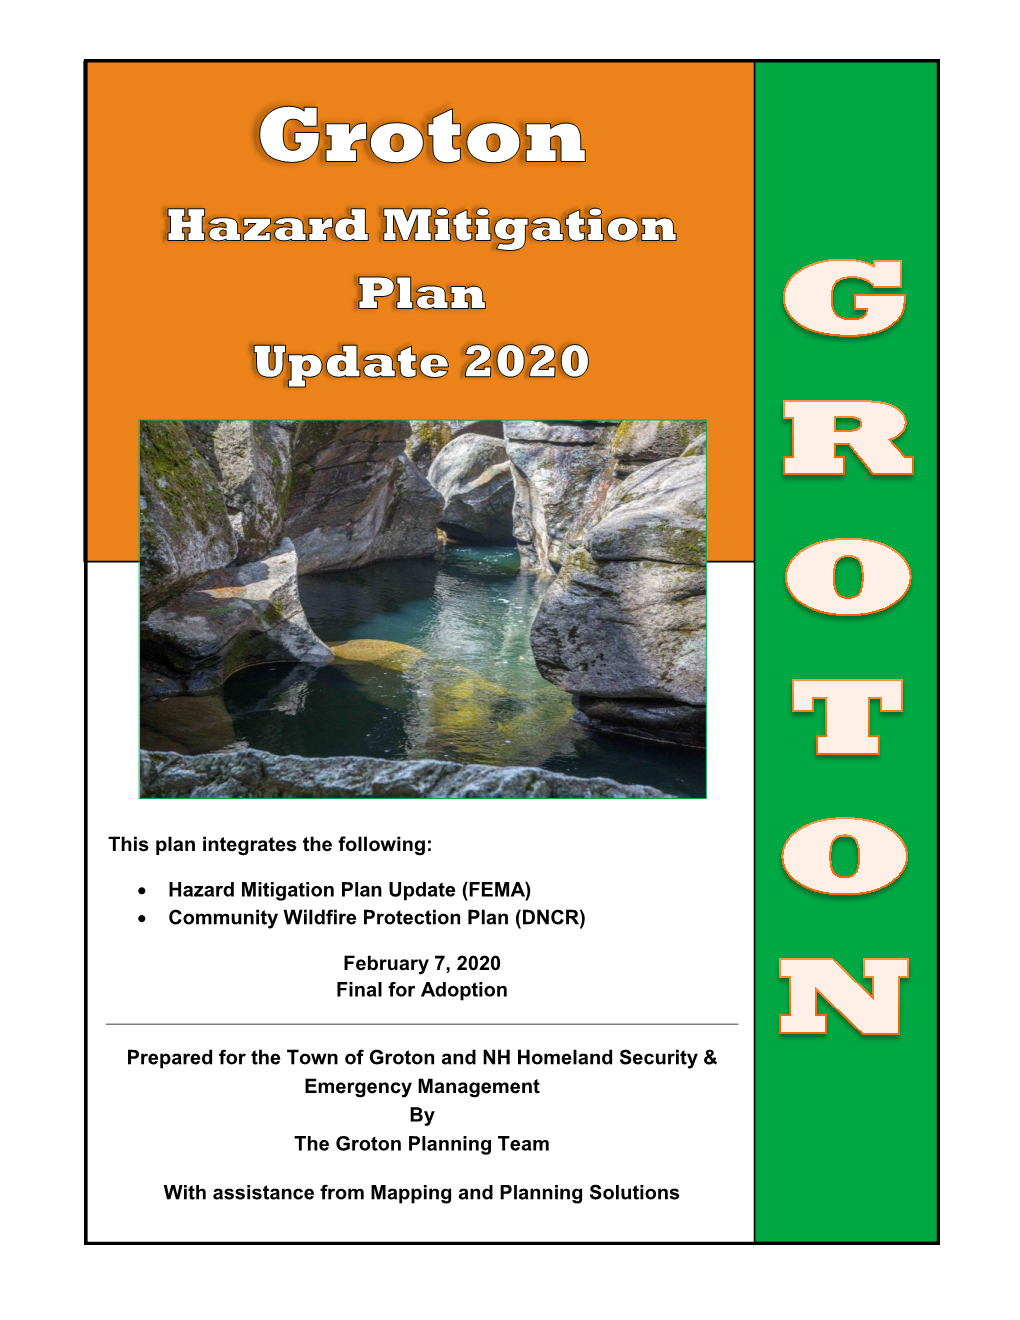 Groton Hazard Mitigation Plan Update 2020